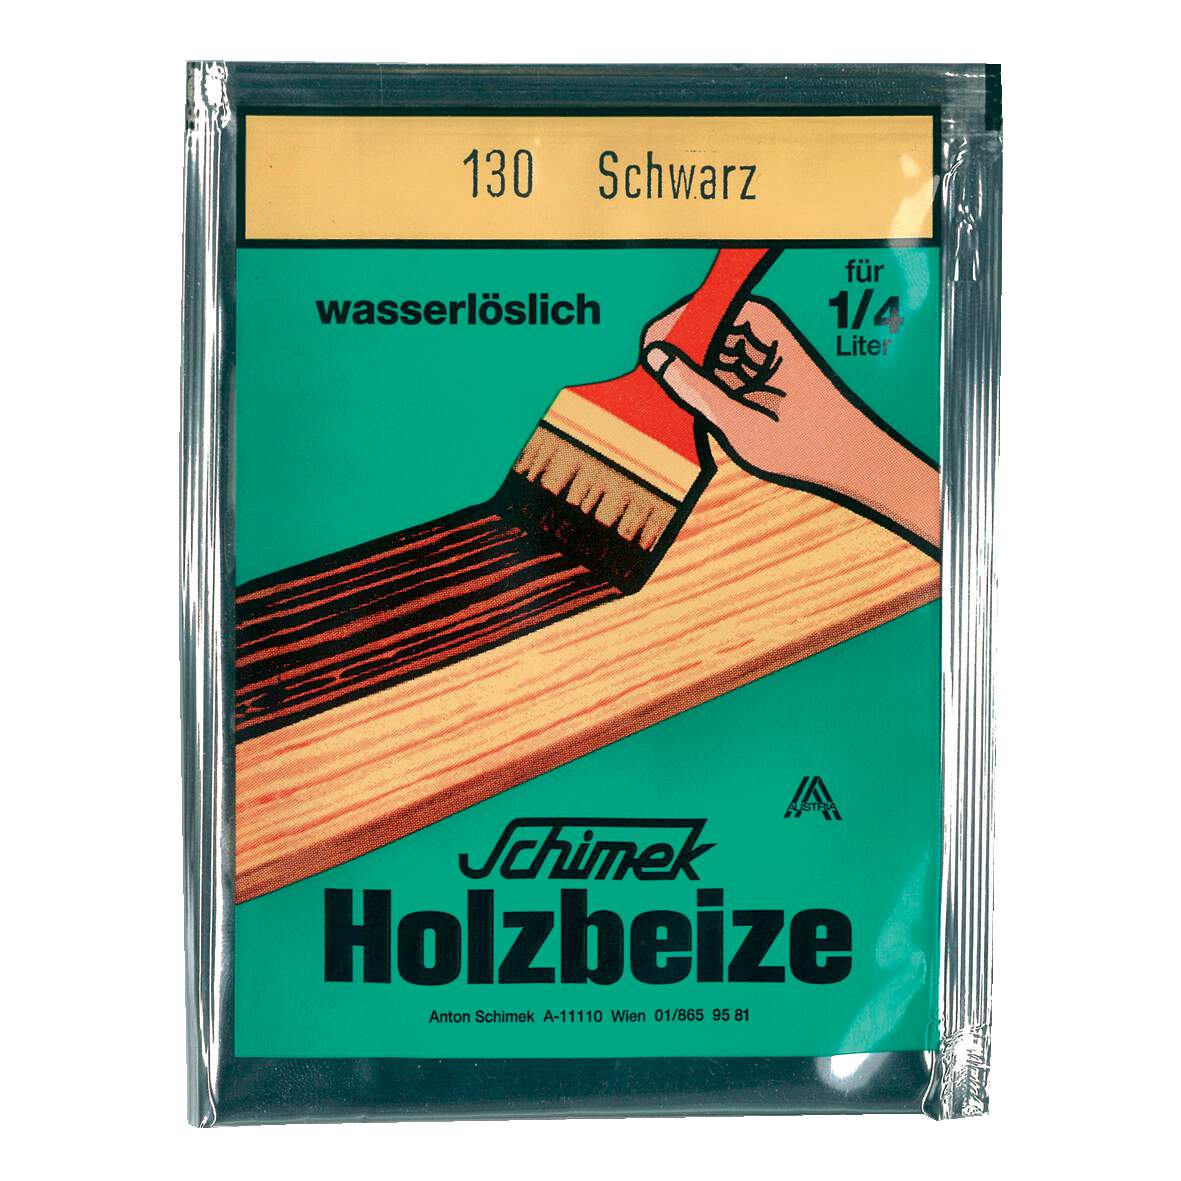 1216635 - Holzbeize wasserlöslich